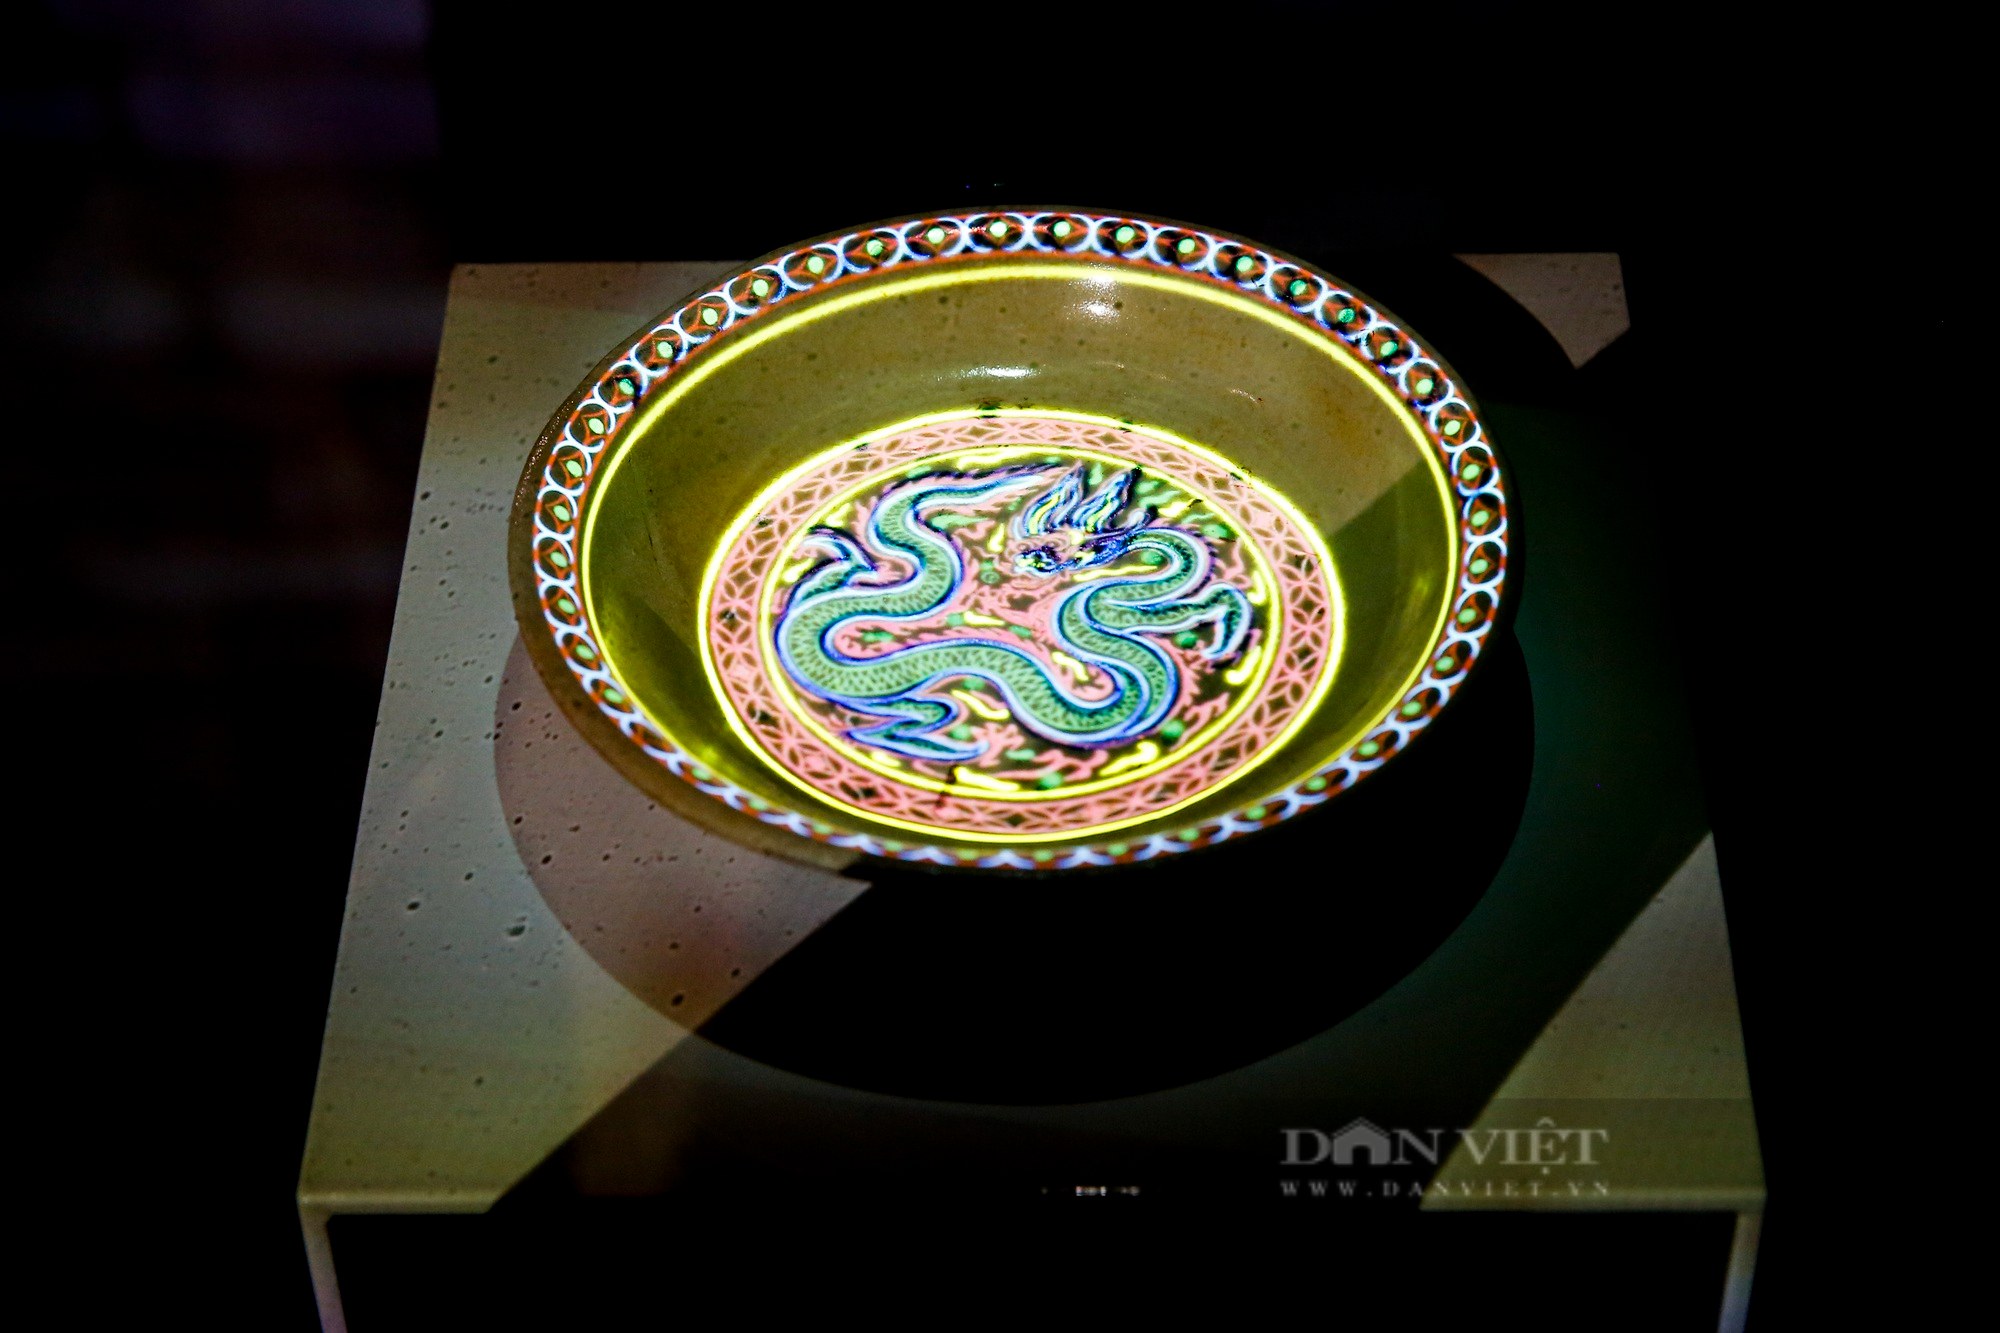 Chiêm ngưỡng những “Báu vật Hoàng cung Thăng Long” vô giá được trưng bày tại Hà Nội - Ảnh 12.